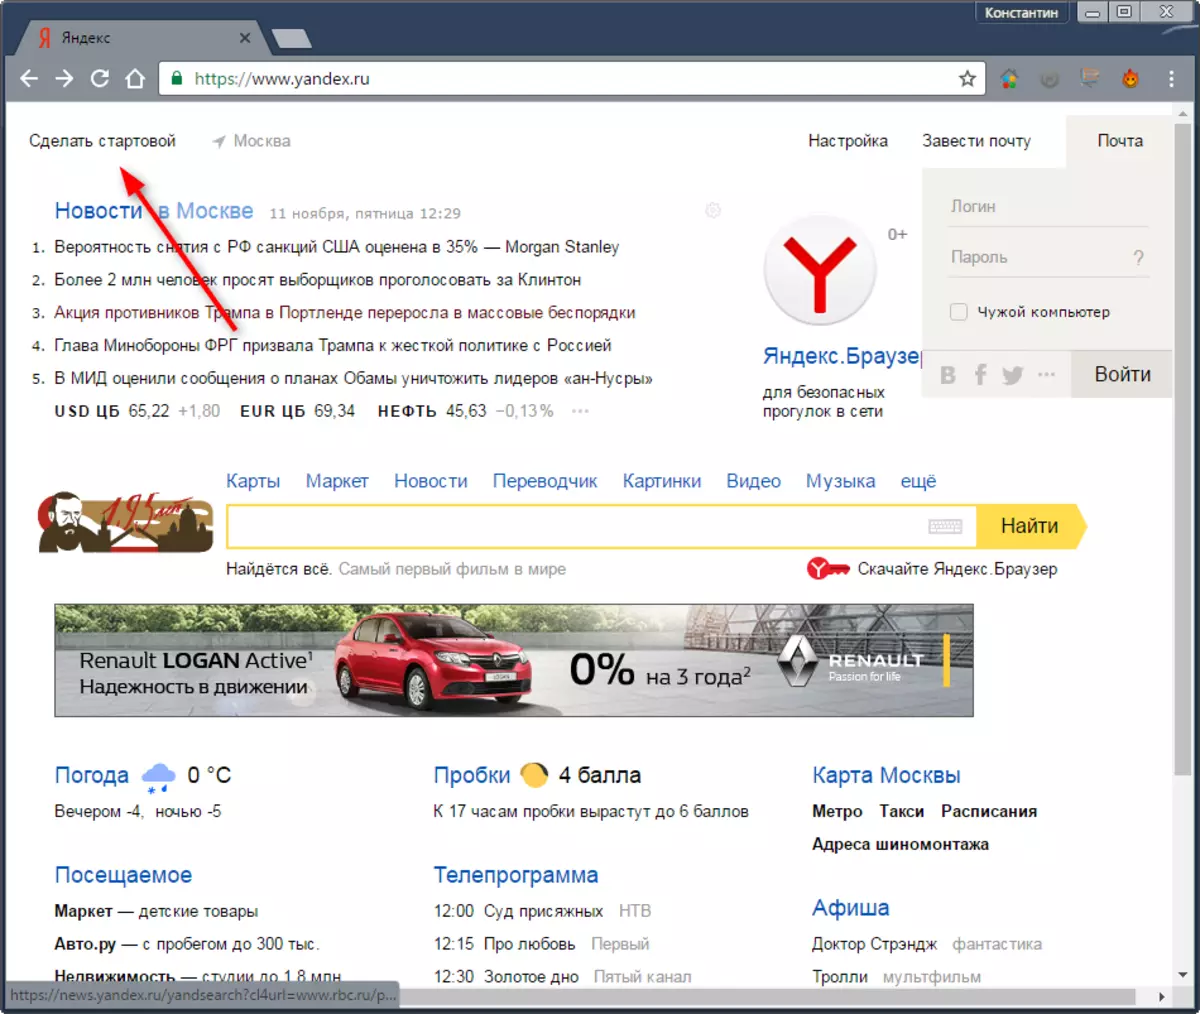 Yandex የመጀመሪያ ገጽ 1 ማድረግ እንደሚቻል